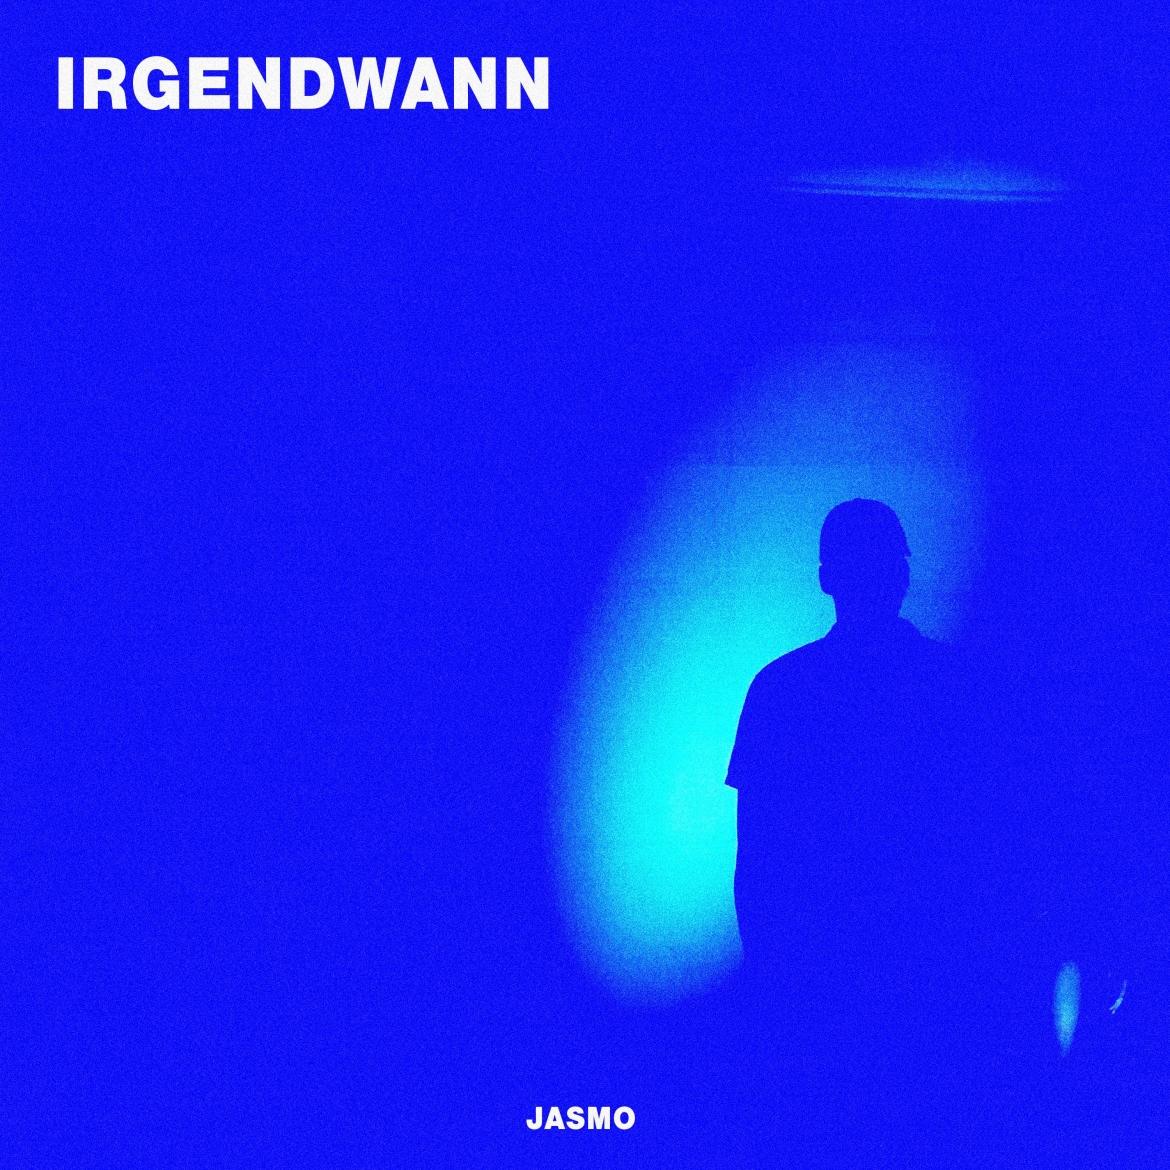 Das Cover zur neuen Single "Irgendwann" von Jasmo